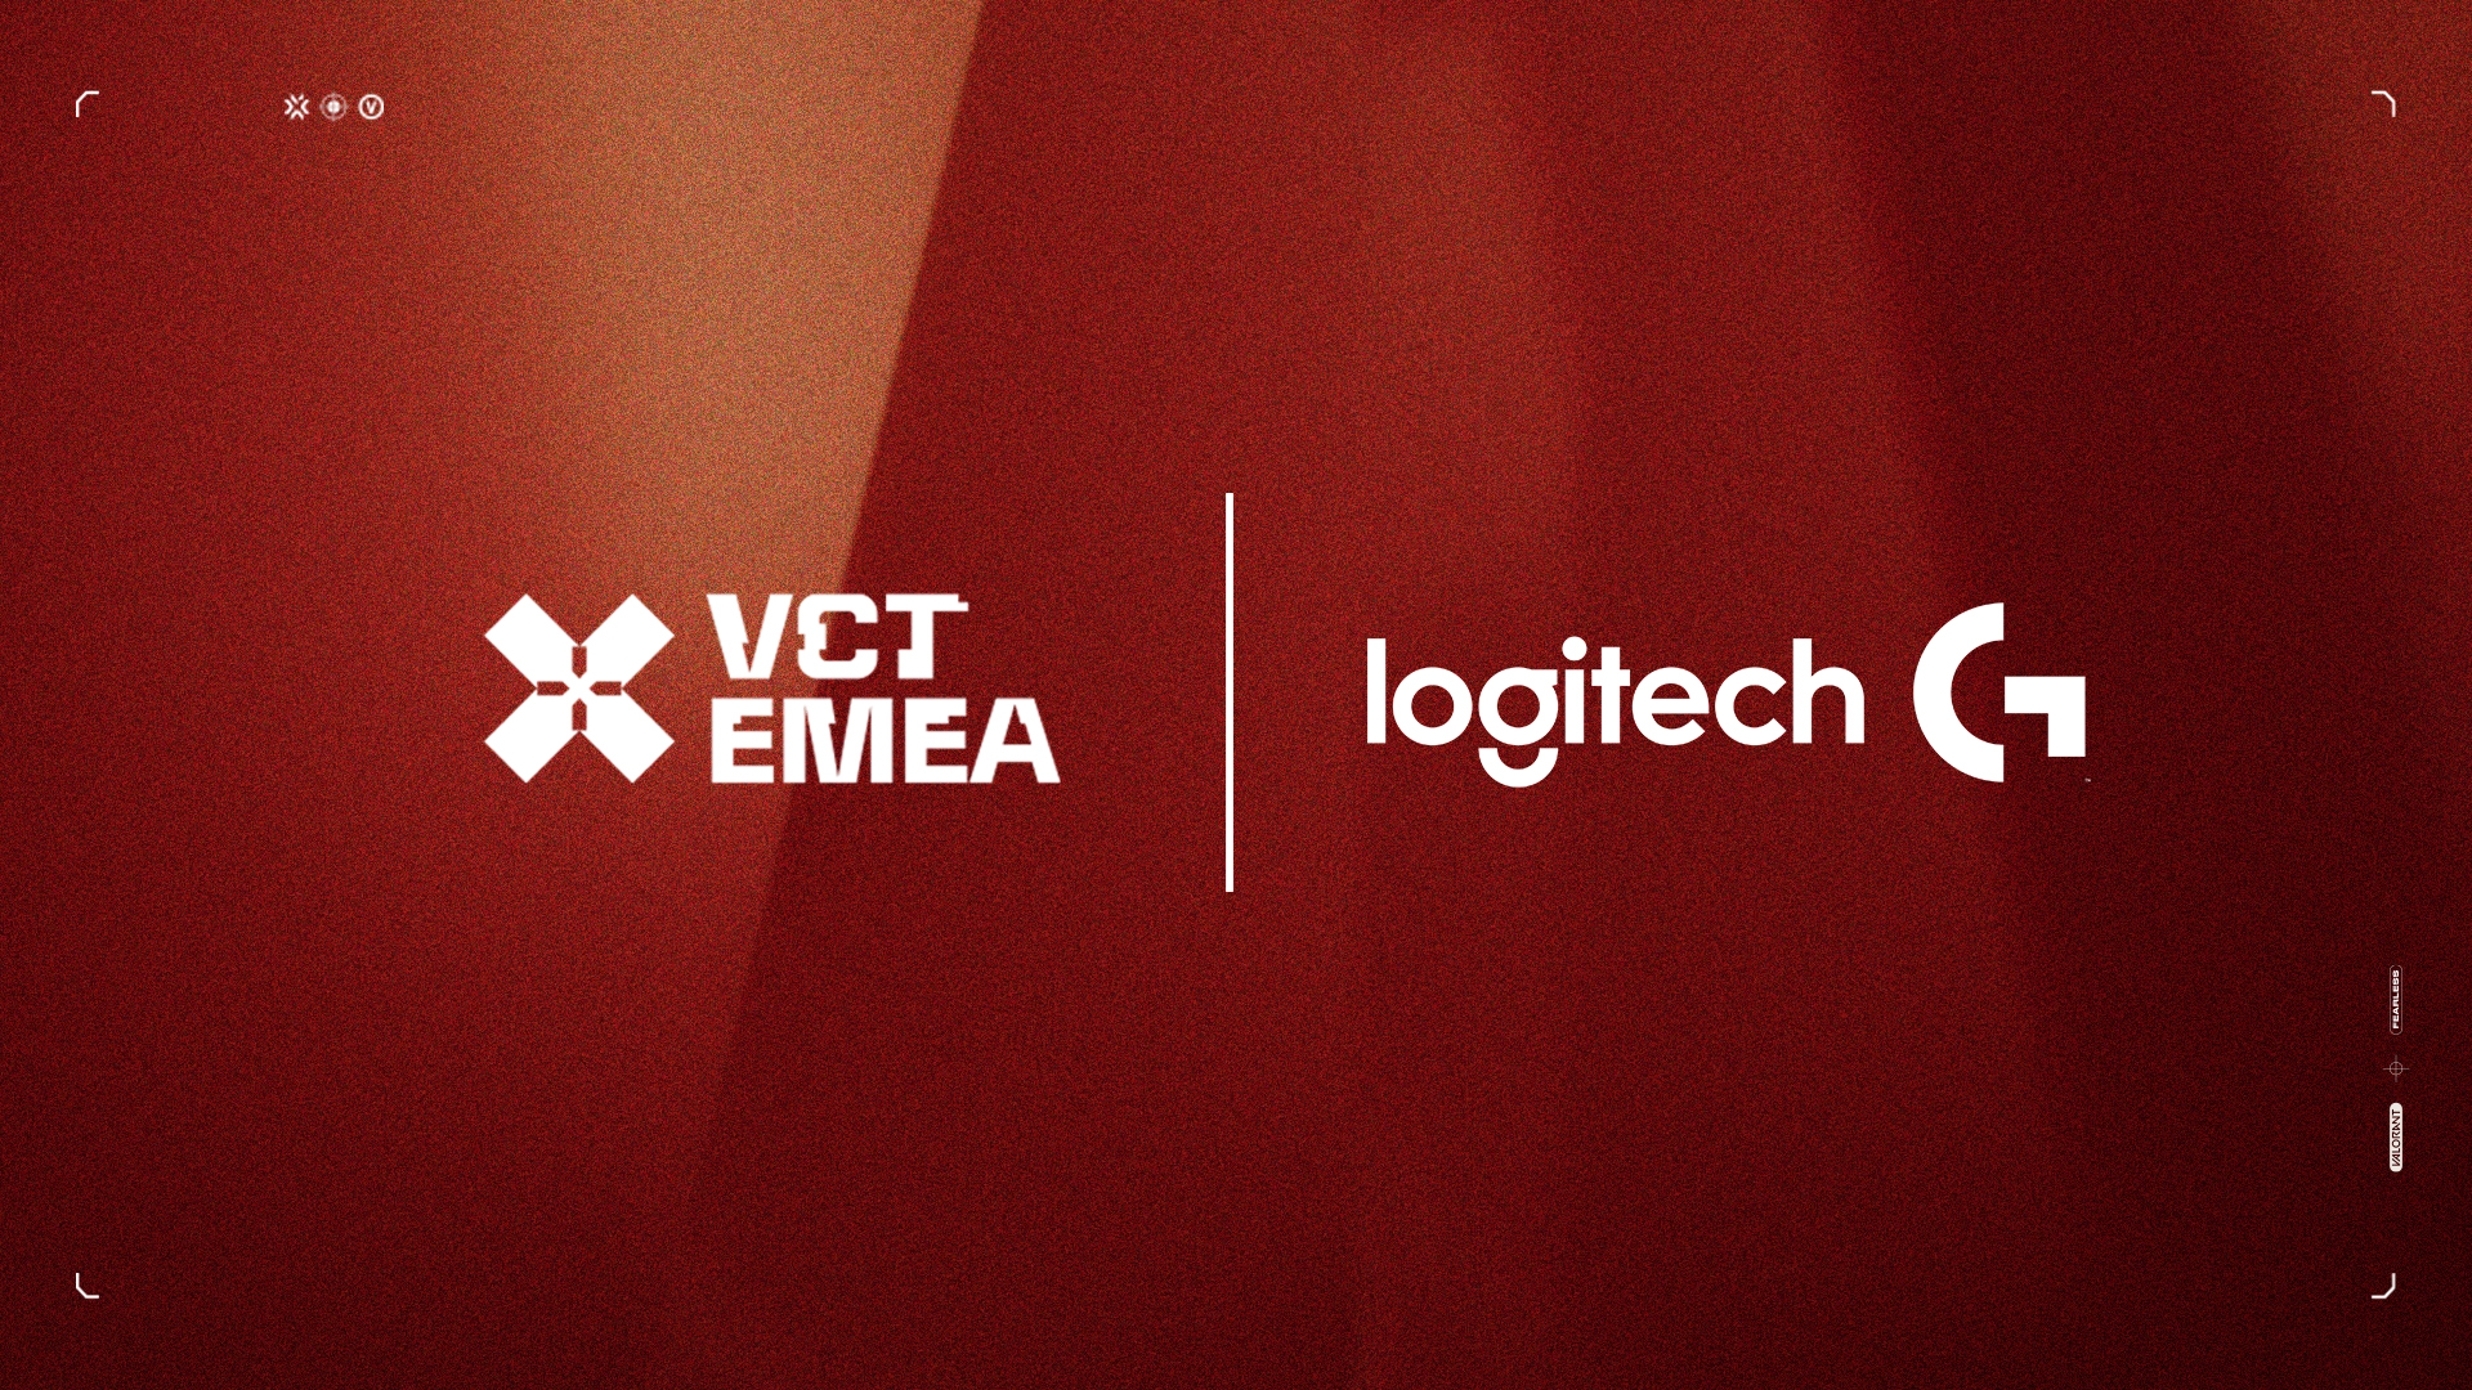 Logitech G named official partner of VCT EMEA